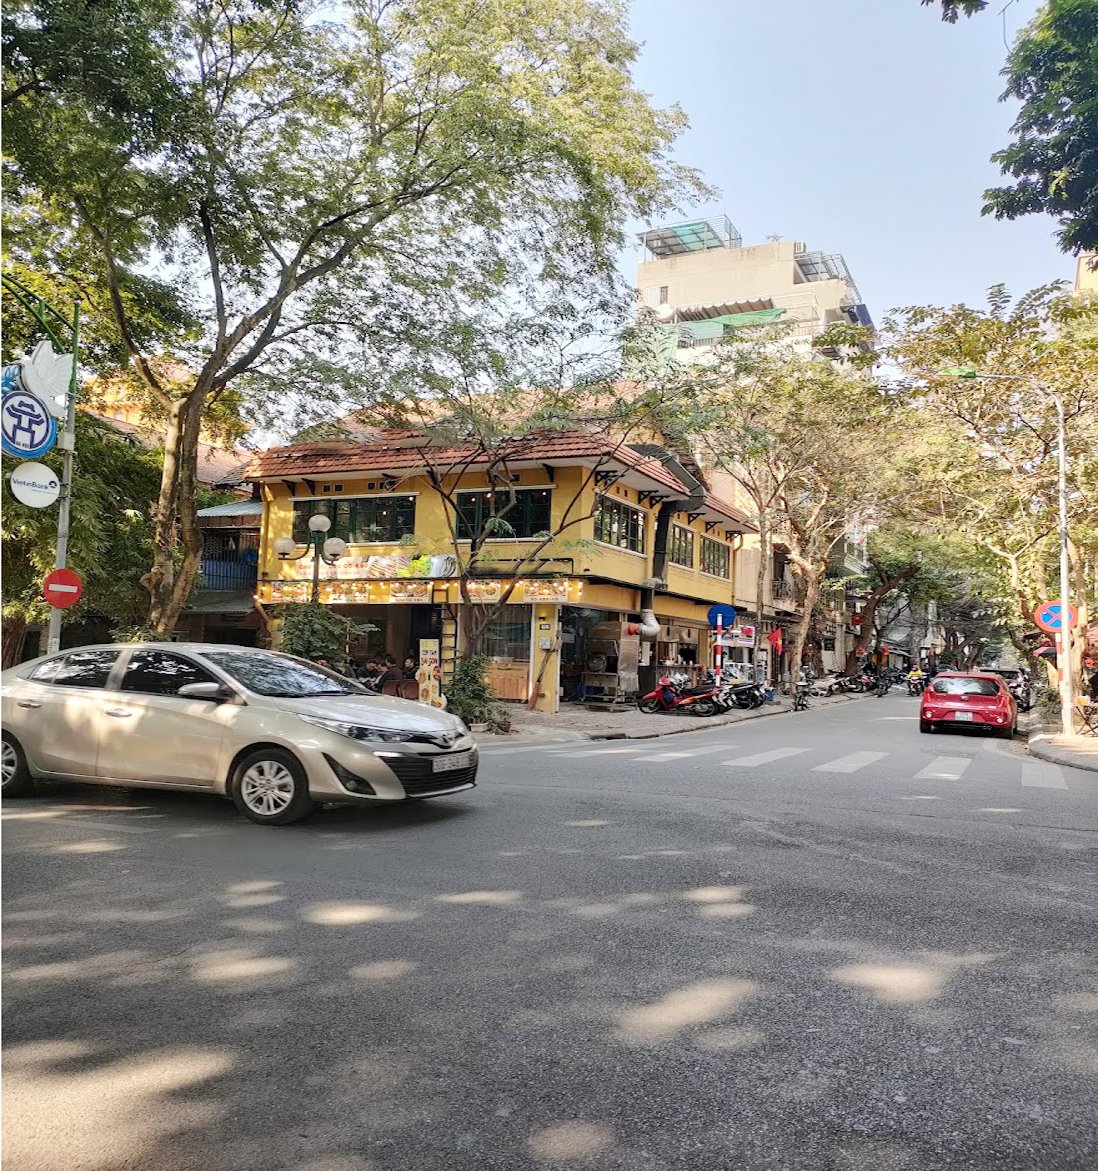 Bán nhà mặt phố Hoàn Kiếm 60m2, Lô Góc Kinh Doanh, View 2 Phố lớn, 2 Mặt tiền 15 mét, Vỉa hè rộng.